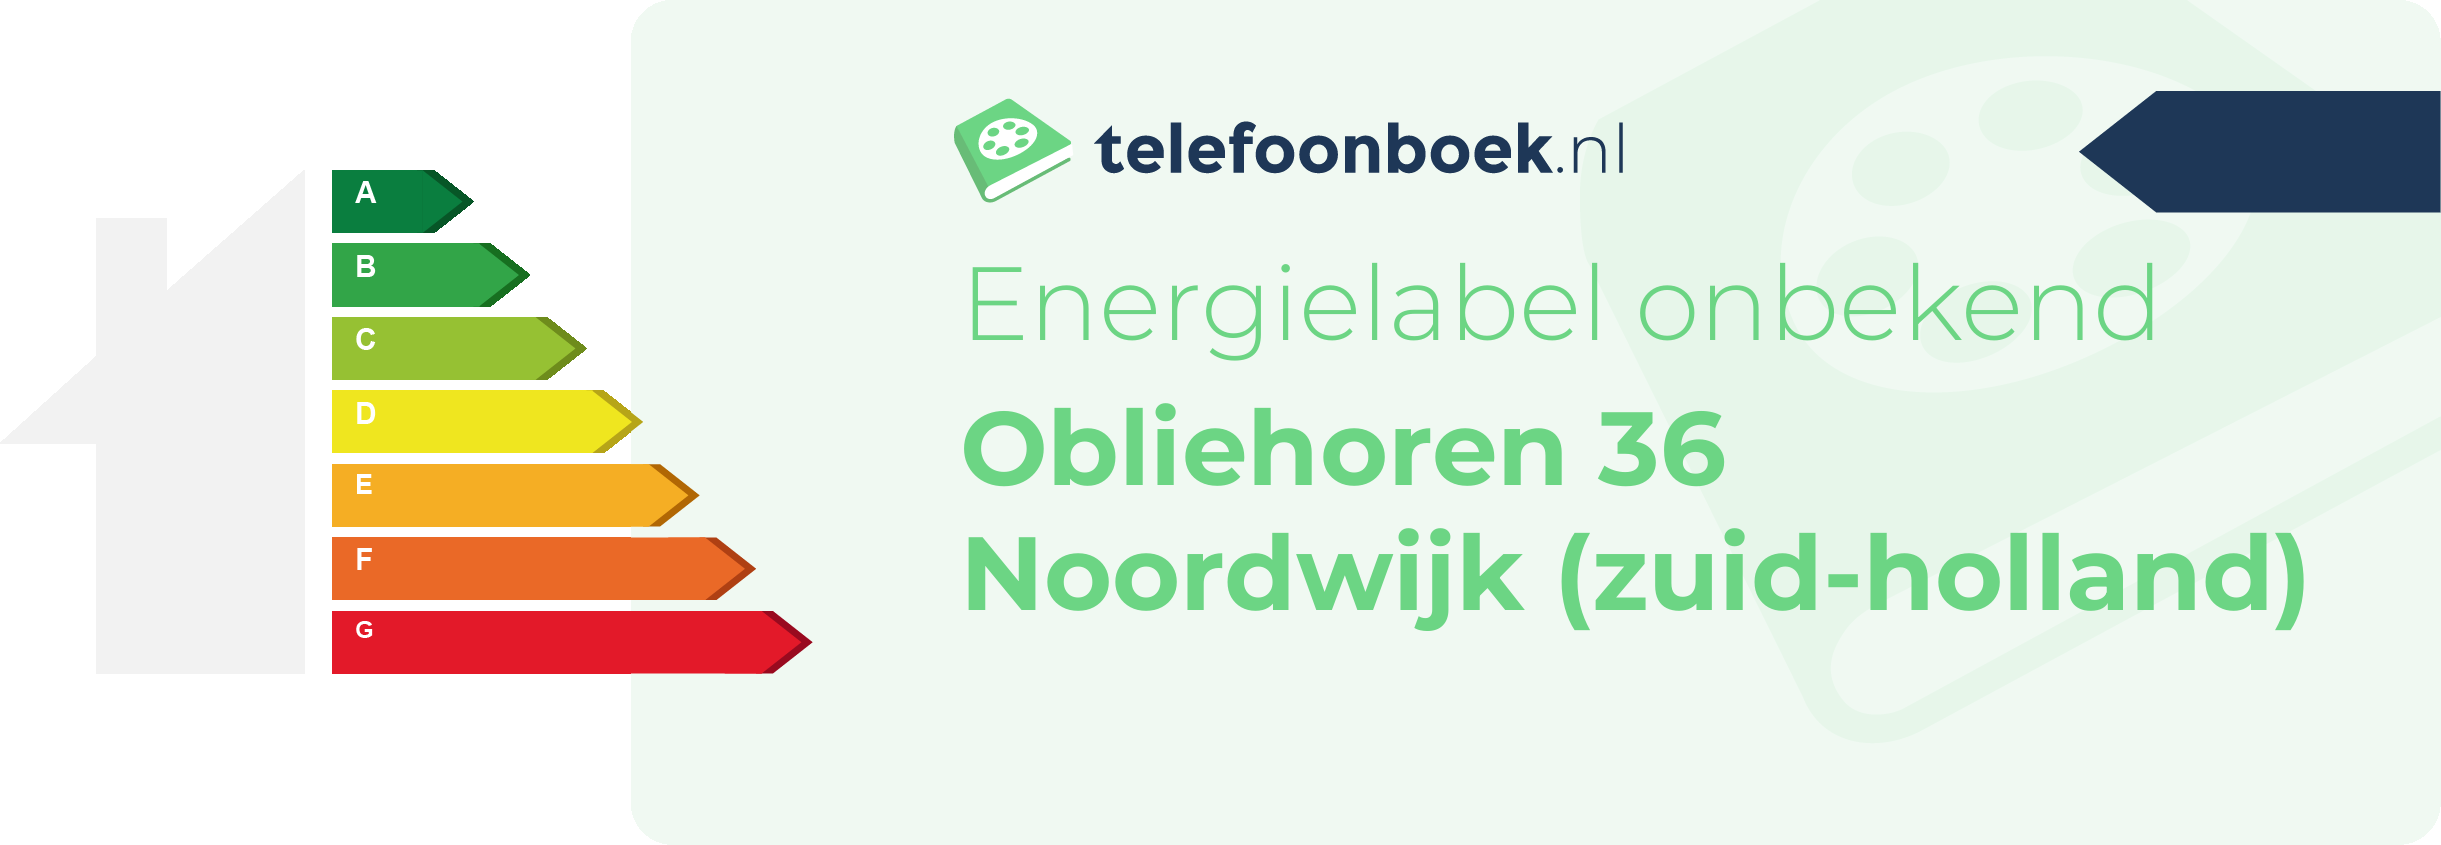 Energielabel Obliehoren 36 Noordwijk (Zuid-Holland)